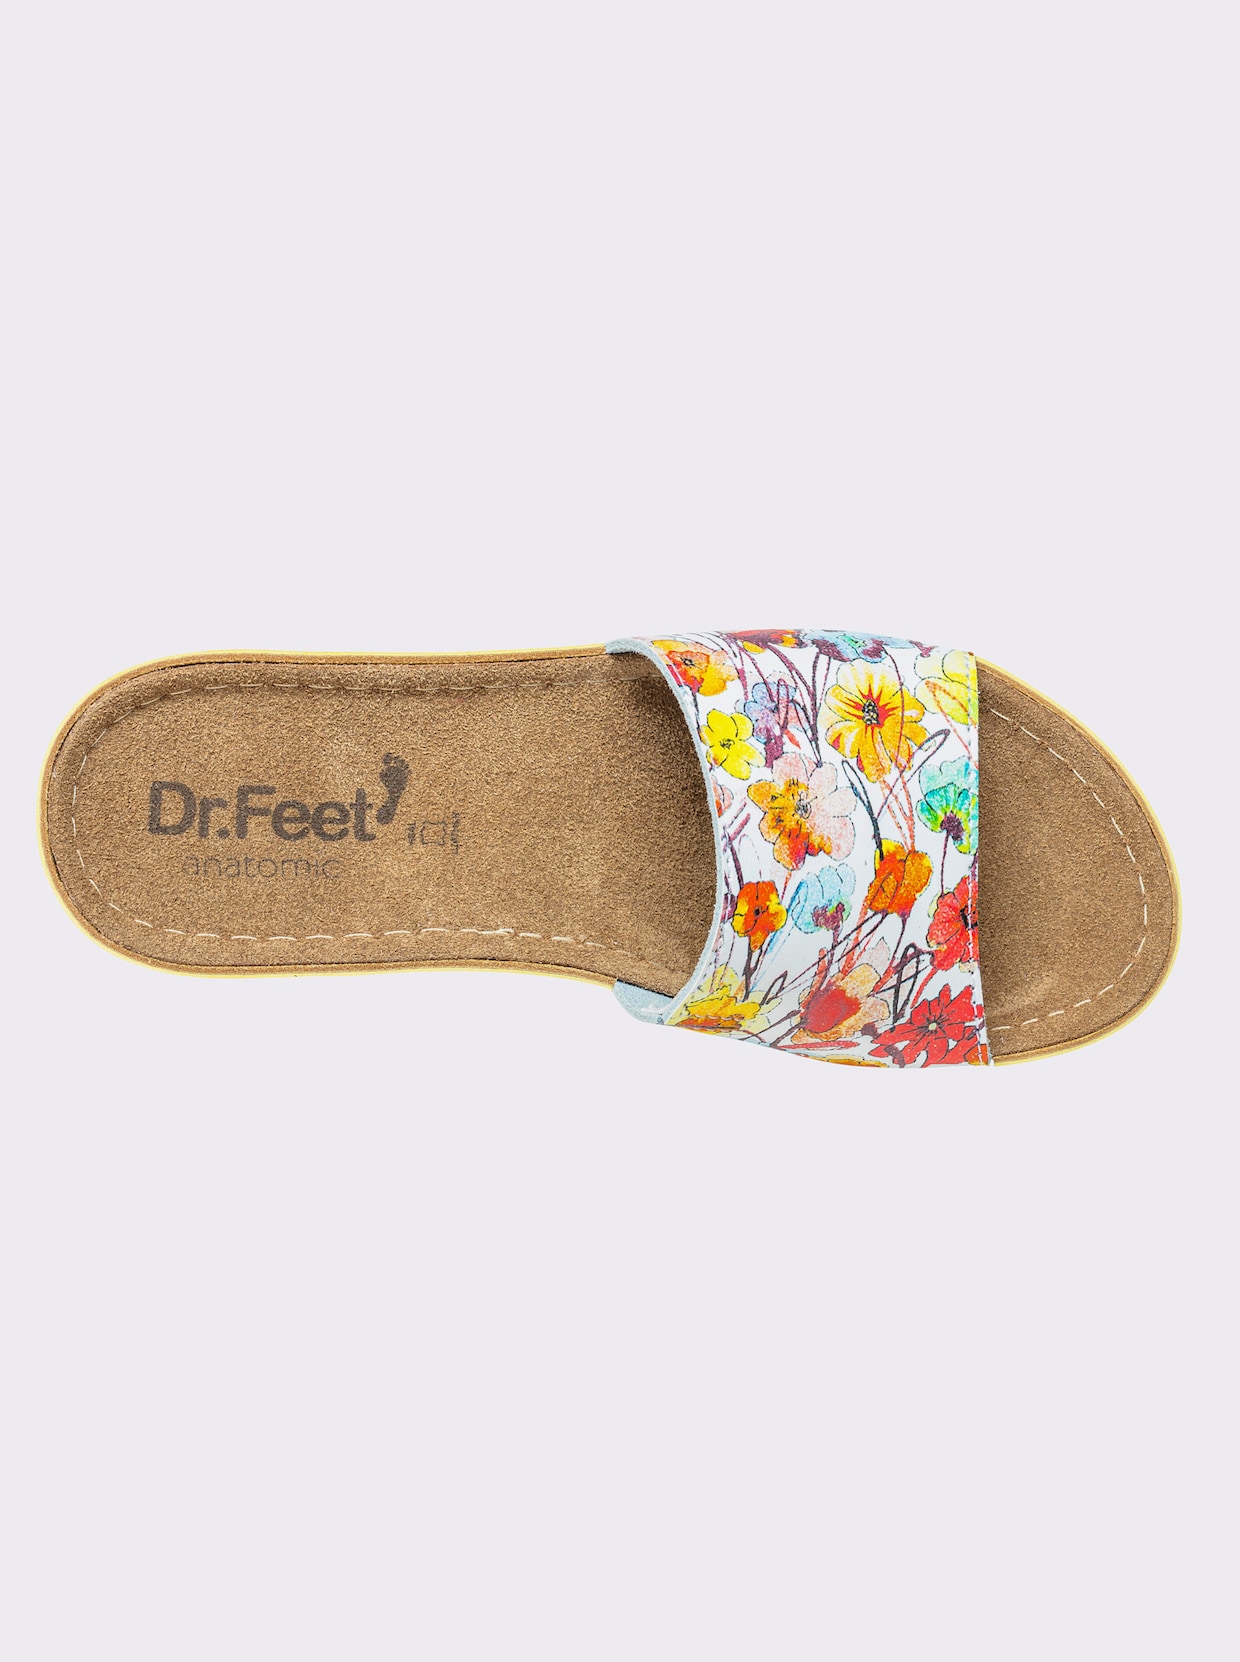 Dr. Feet Huisschoen - geel